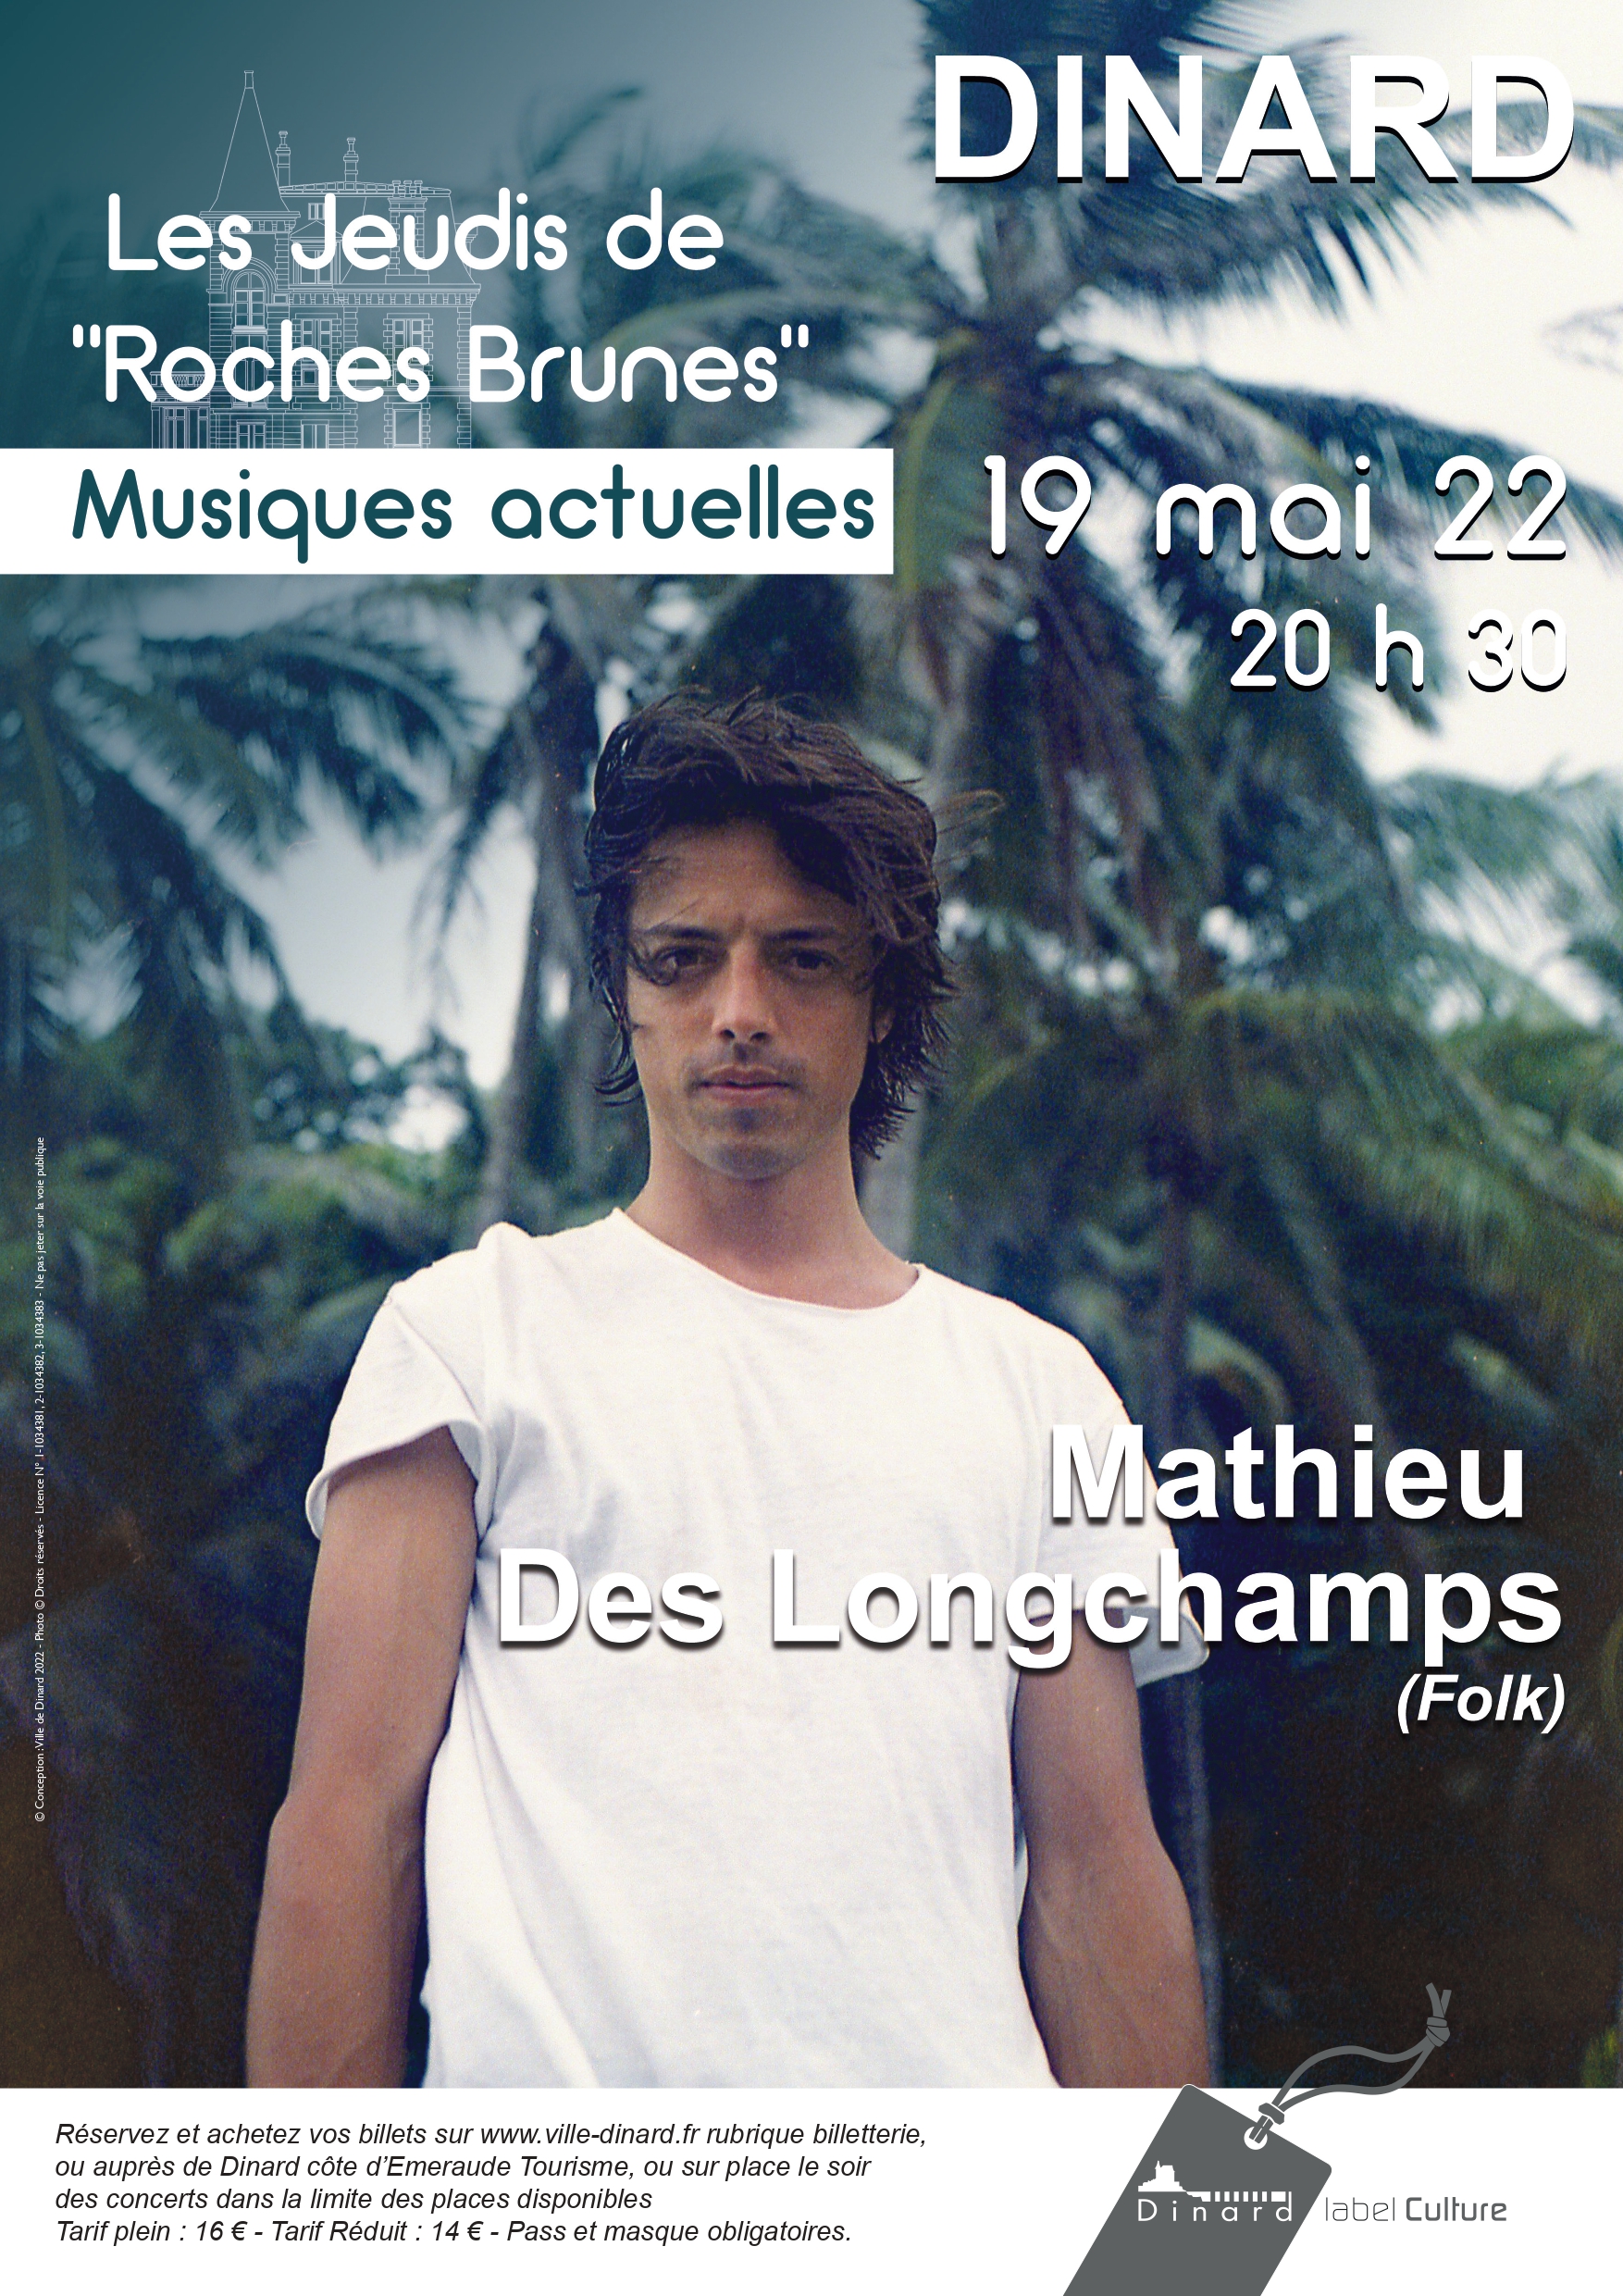 Jeudis de Roches Brunes "Musique actuelle" - Mathieu des Longchamps